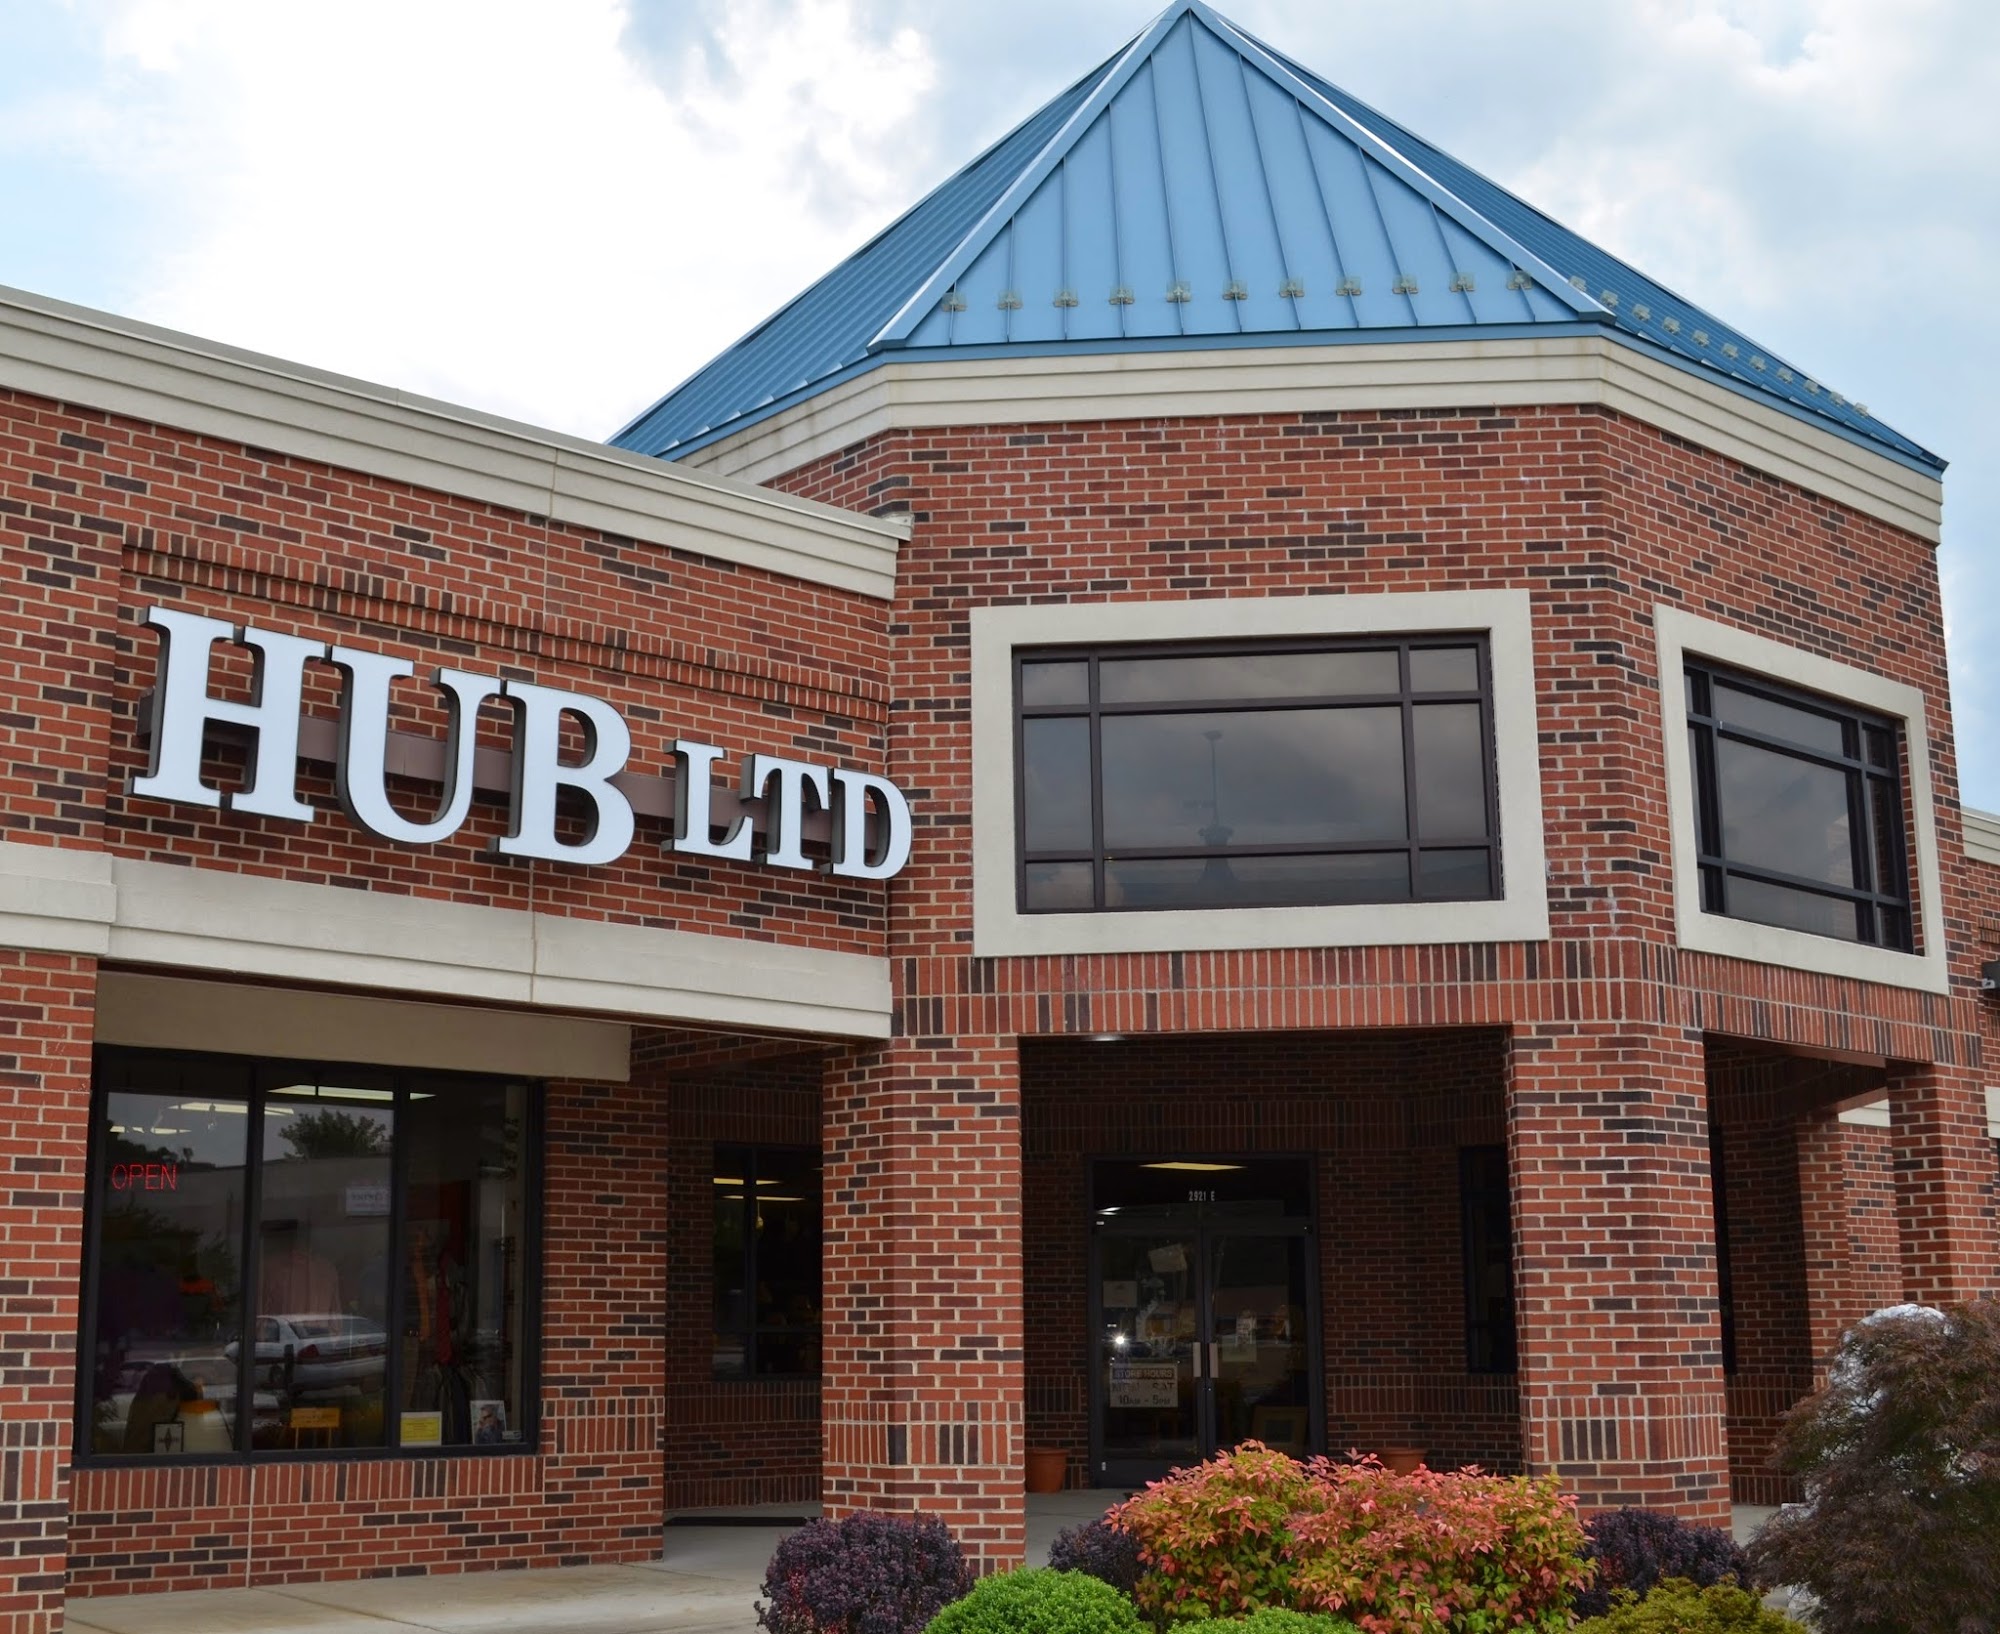 The Hub Ltd